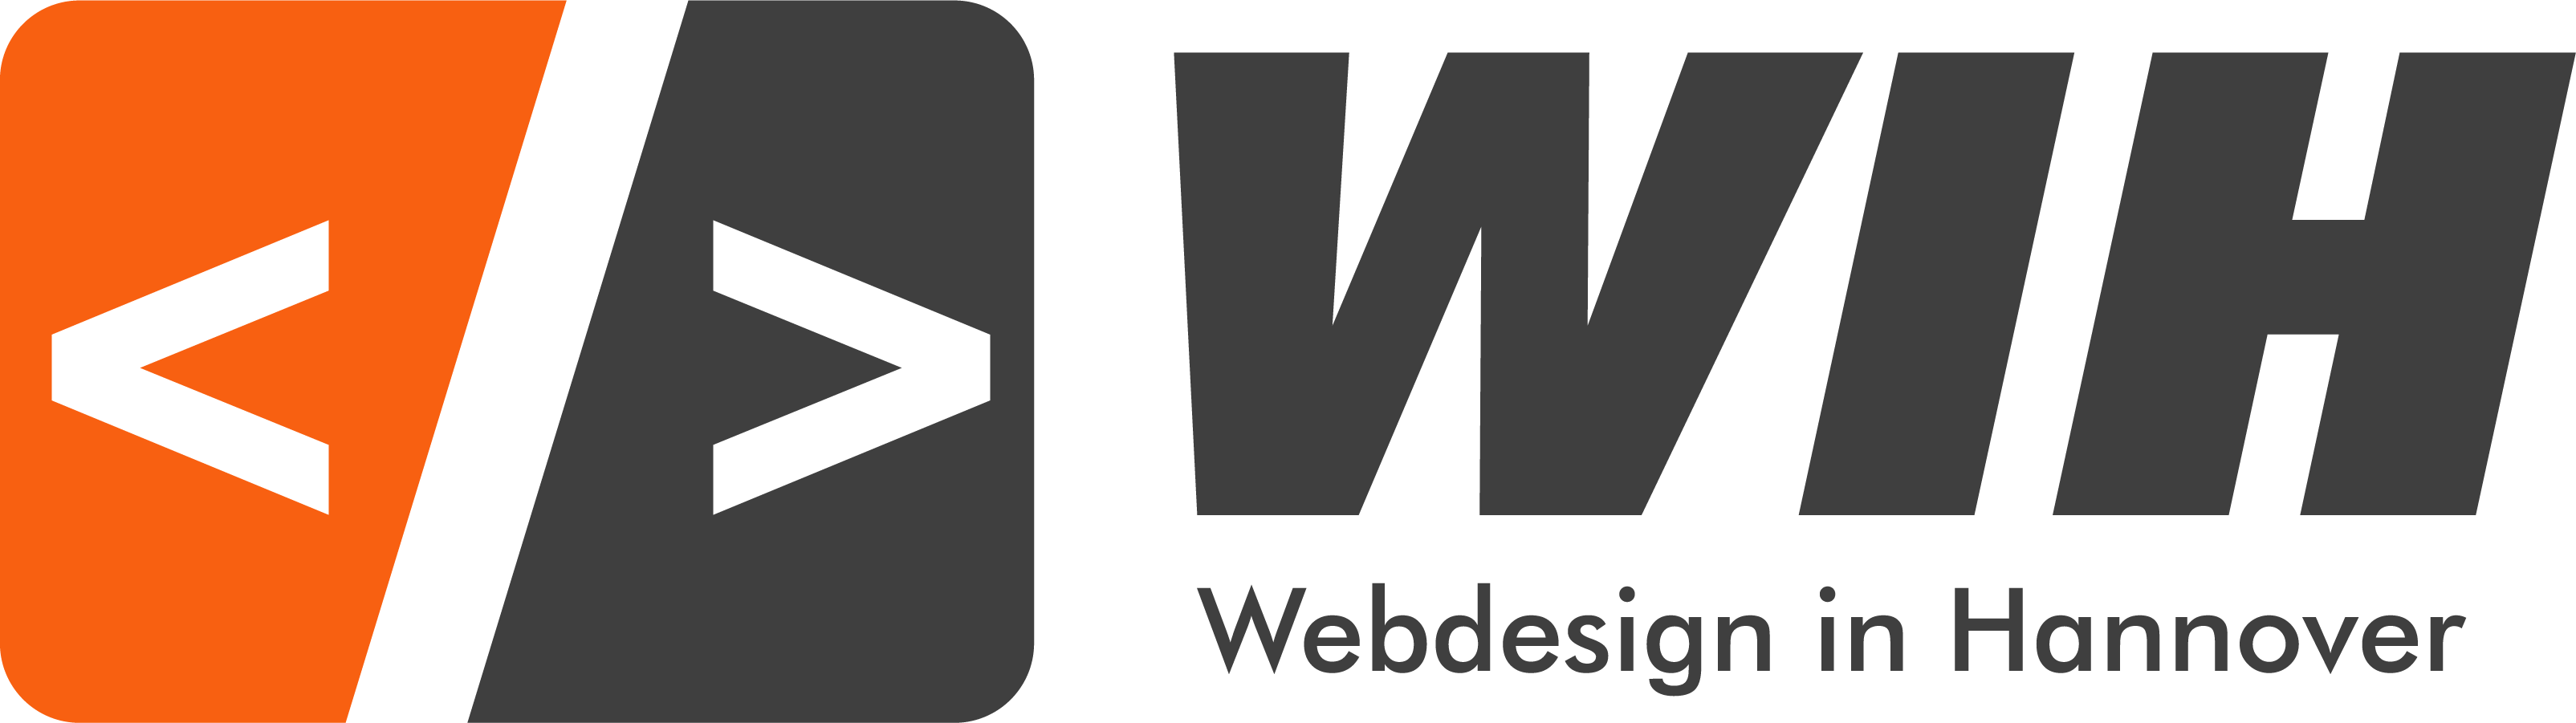 Webdesign in Hannover